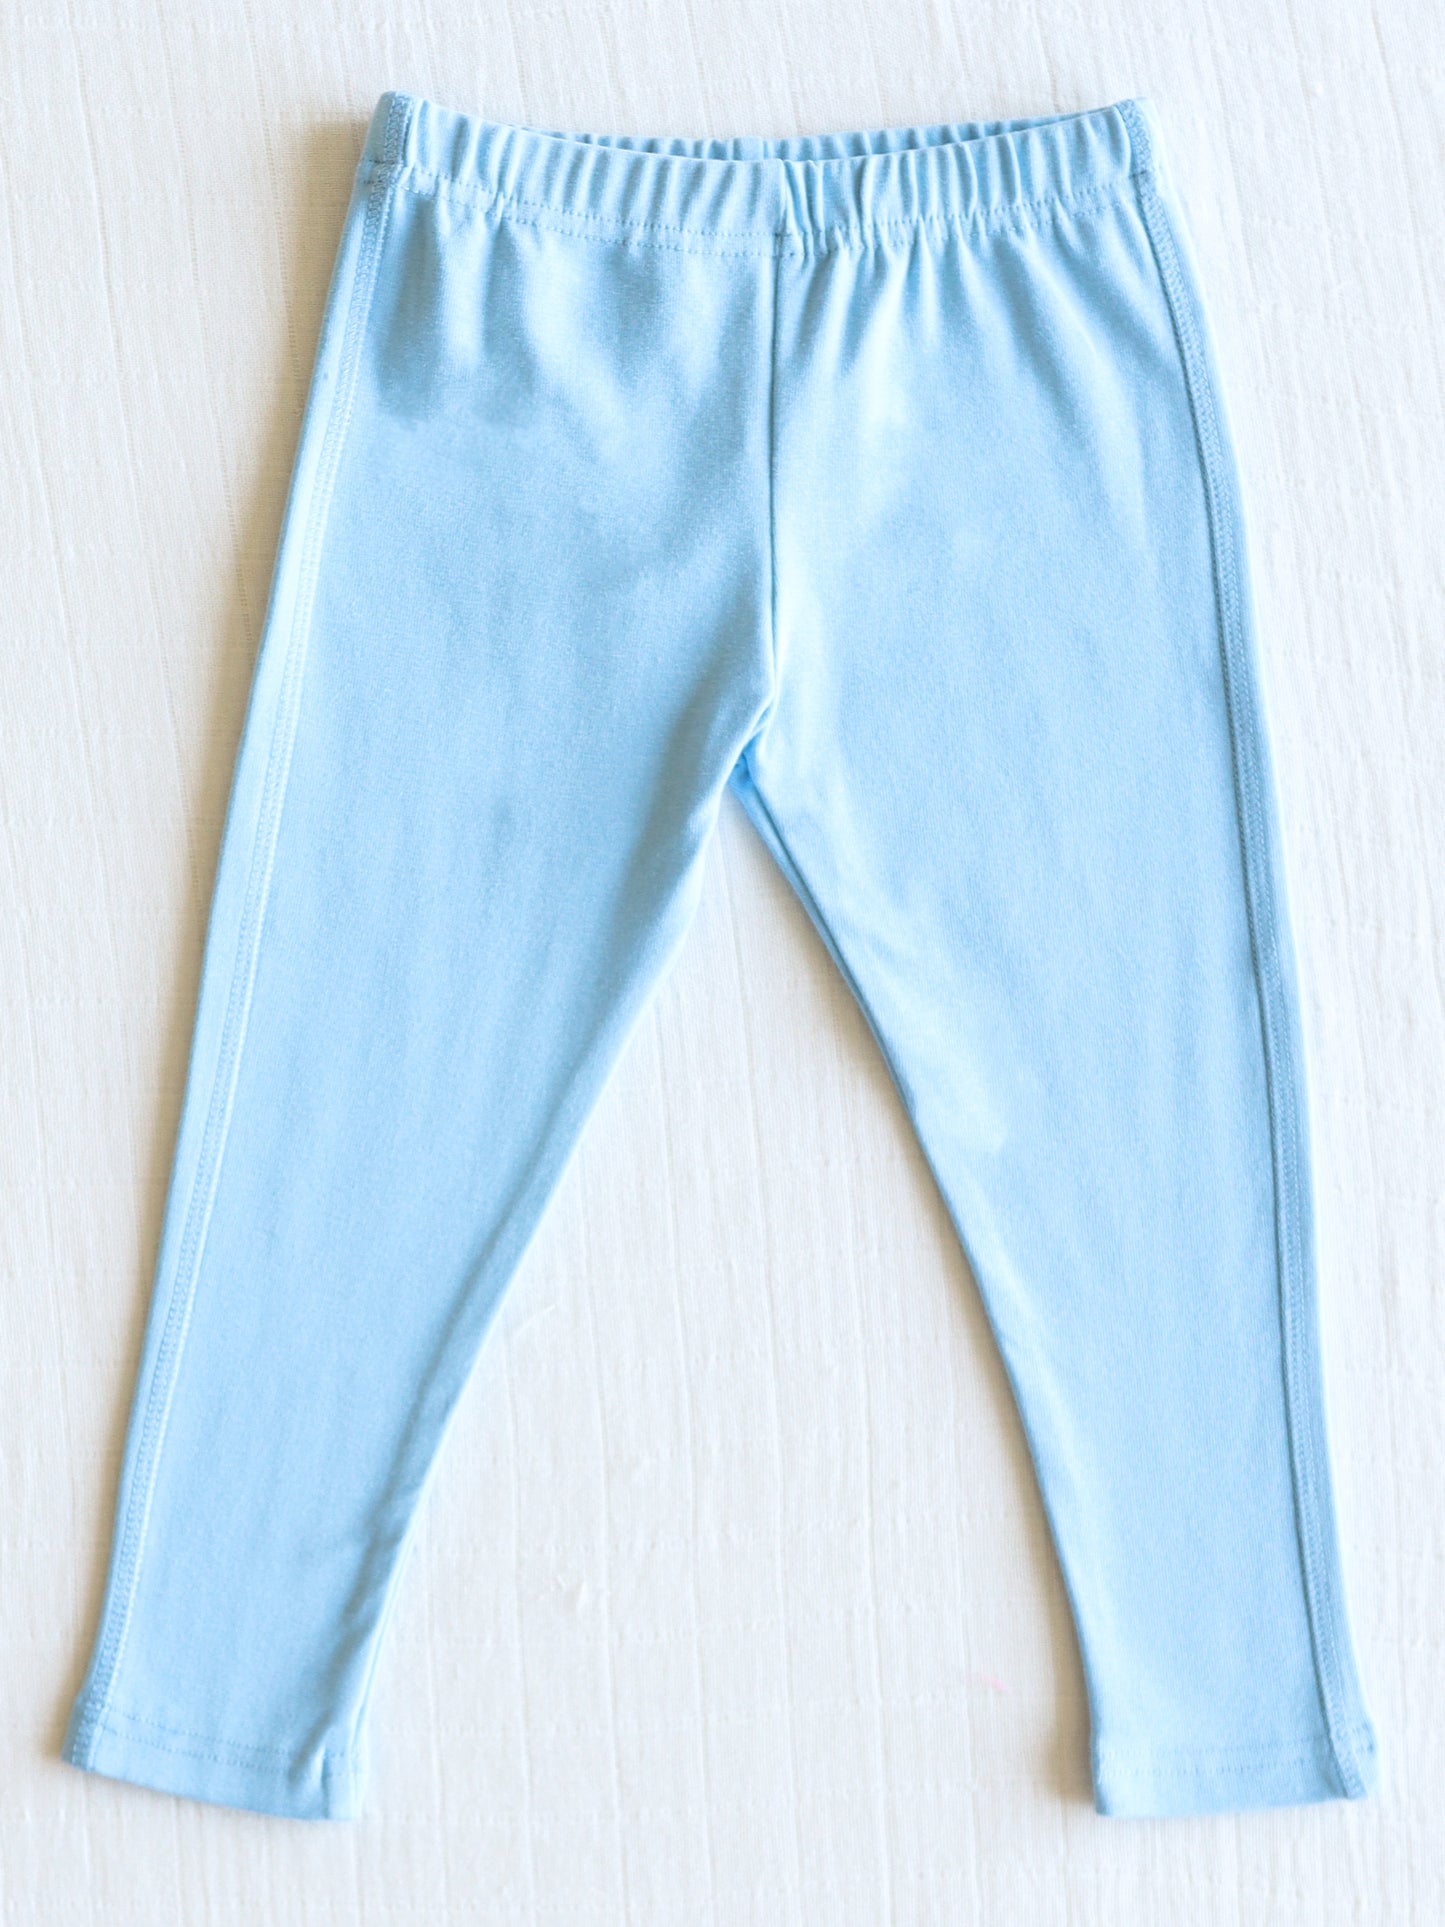 Warm Knit Leggings - Light Blue - SweetHoney Clothing